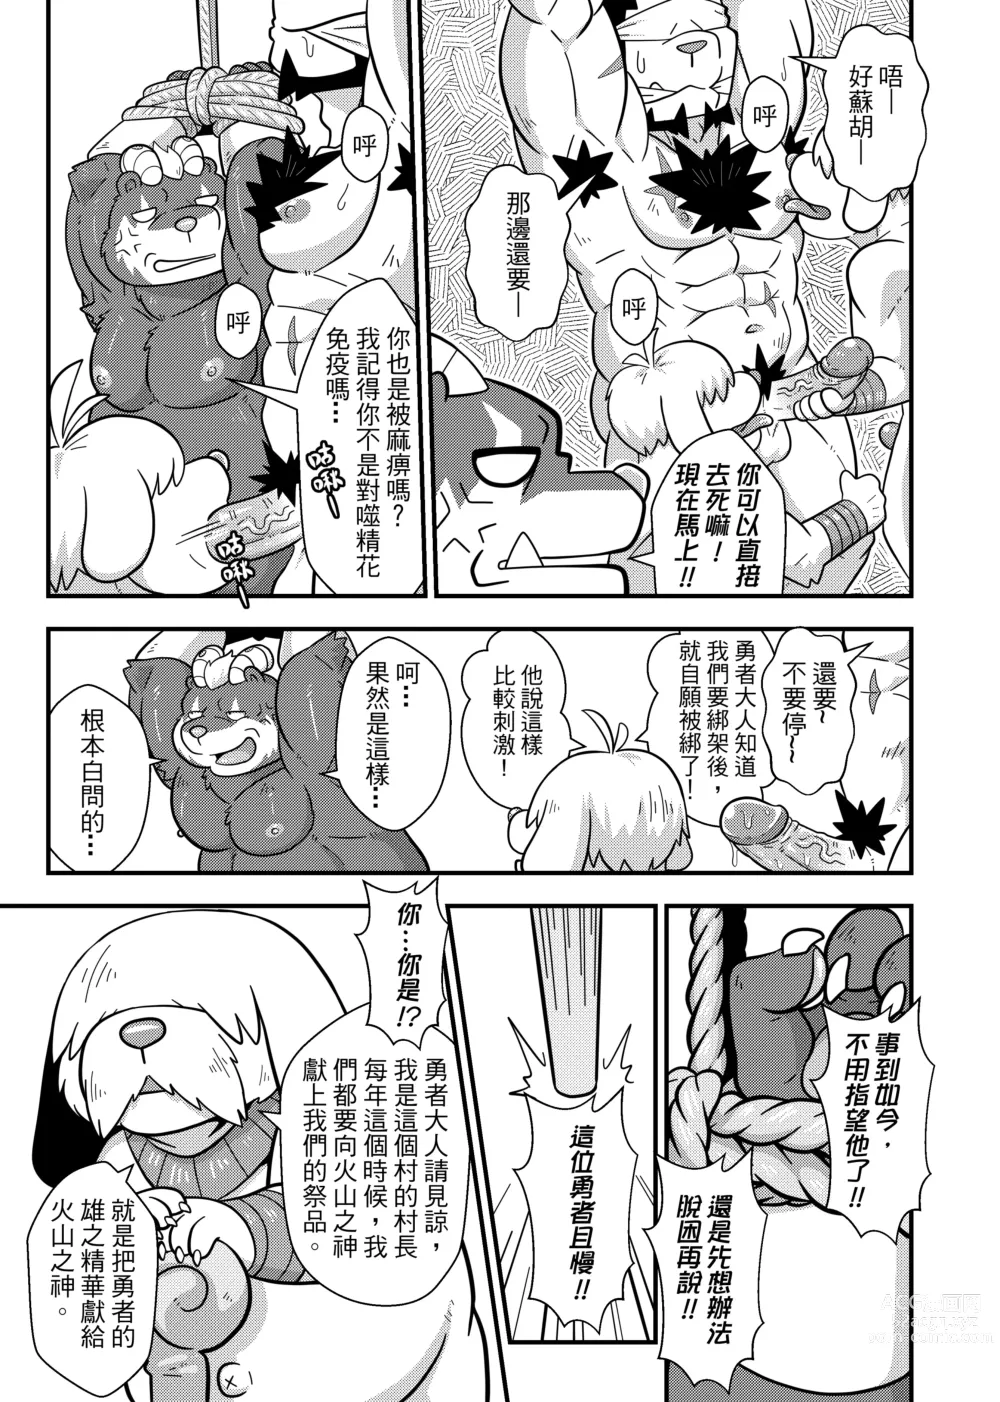 Page 24 of doujinshi 勇者的大小只有魔王塞得下4